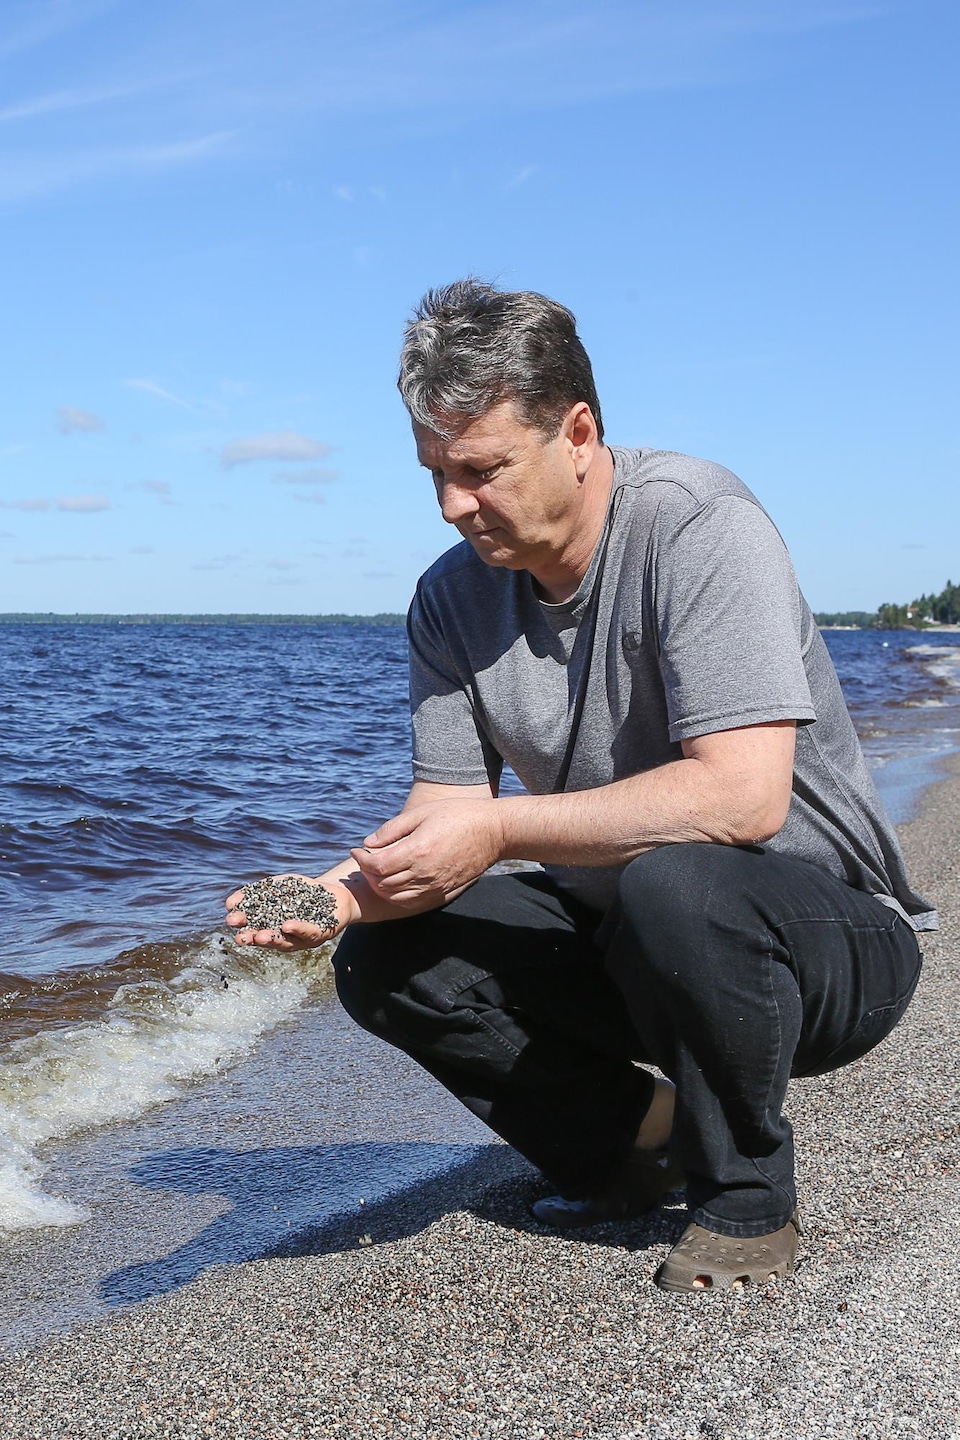 Un homme agenouillé sur la rive d'un lac fait couler du gravillon de sa main.